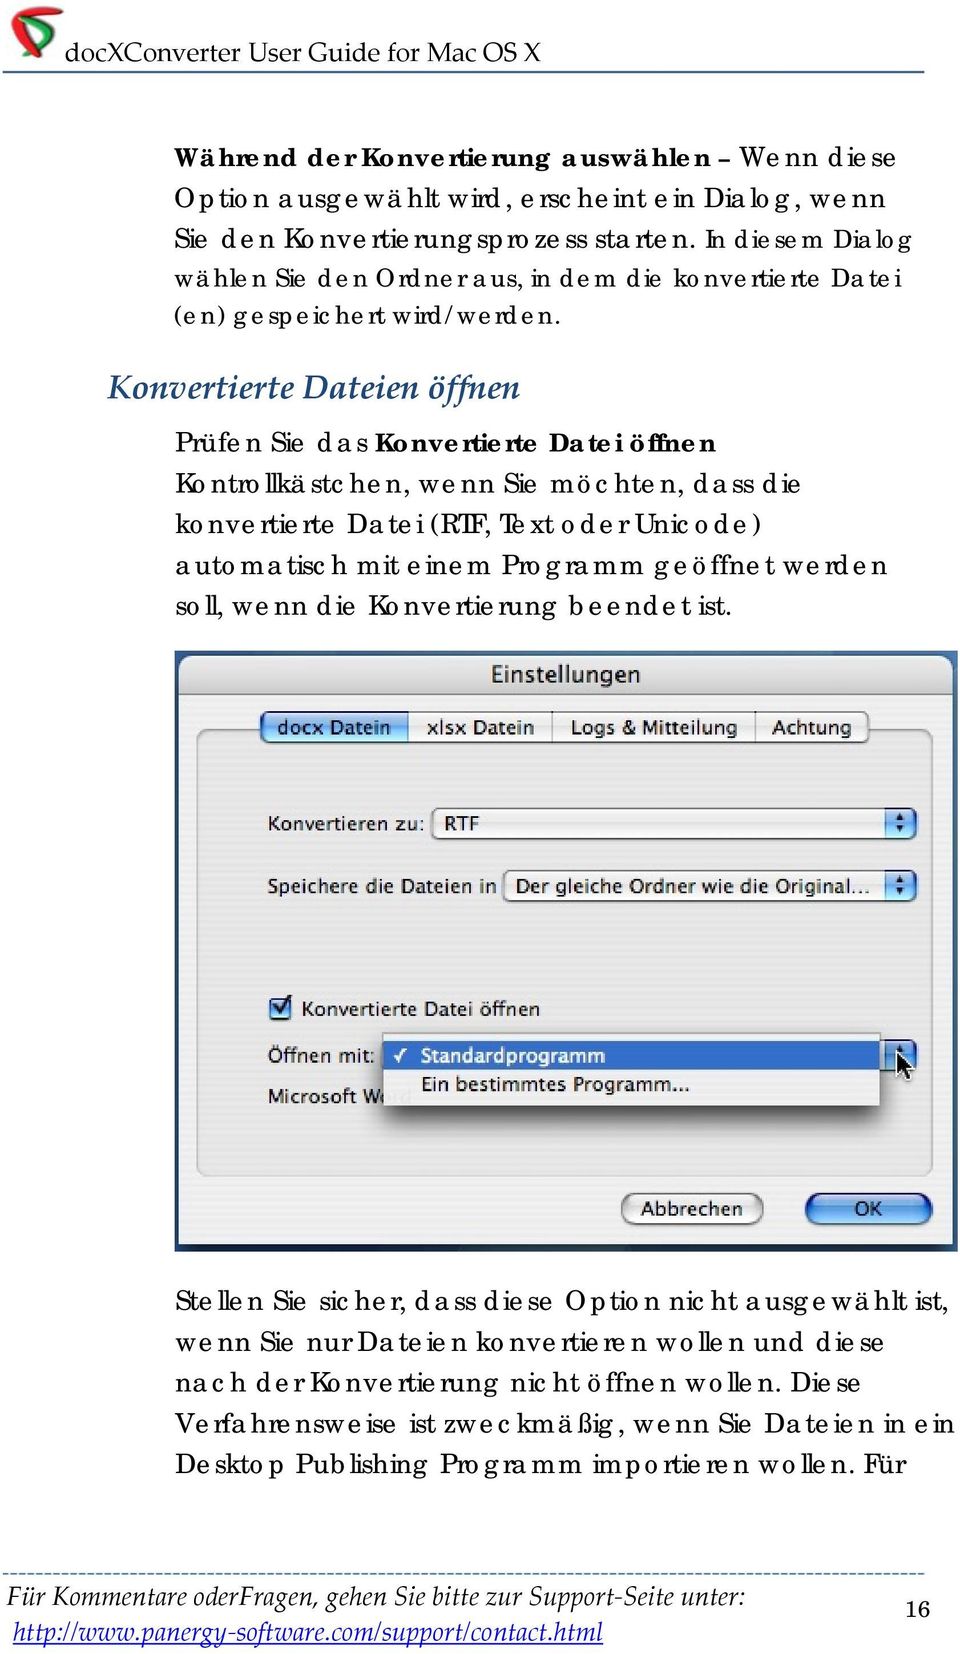 Konvertierte Dateien öffnen Prüfen Sie das Konvertierte Datei öffnen Kontrollkästchen, wenn Sie möchten, dass die konvertierte Datei (RTF, Text oder Unicode) automatisch mit einem Programm